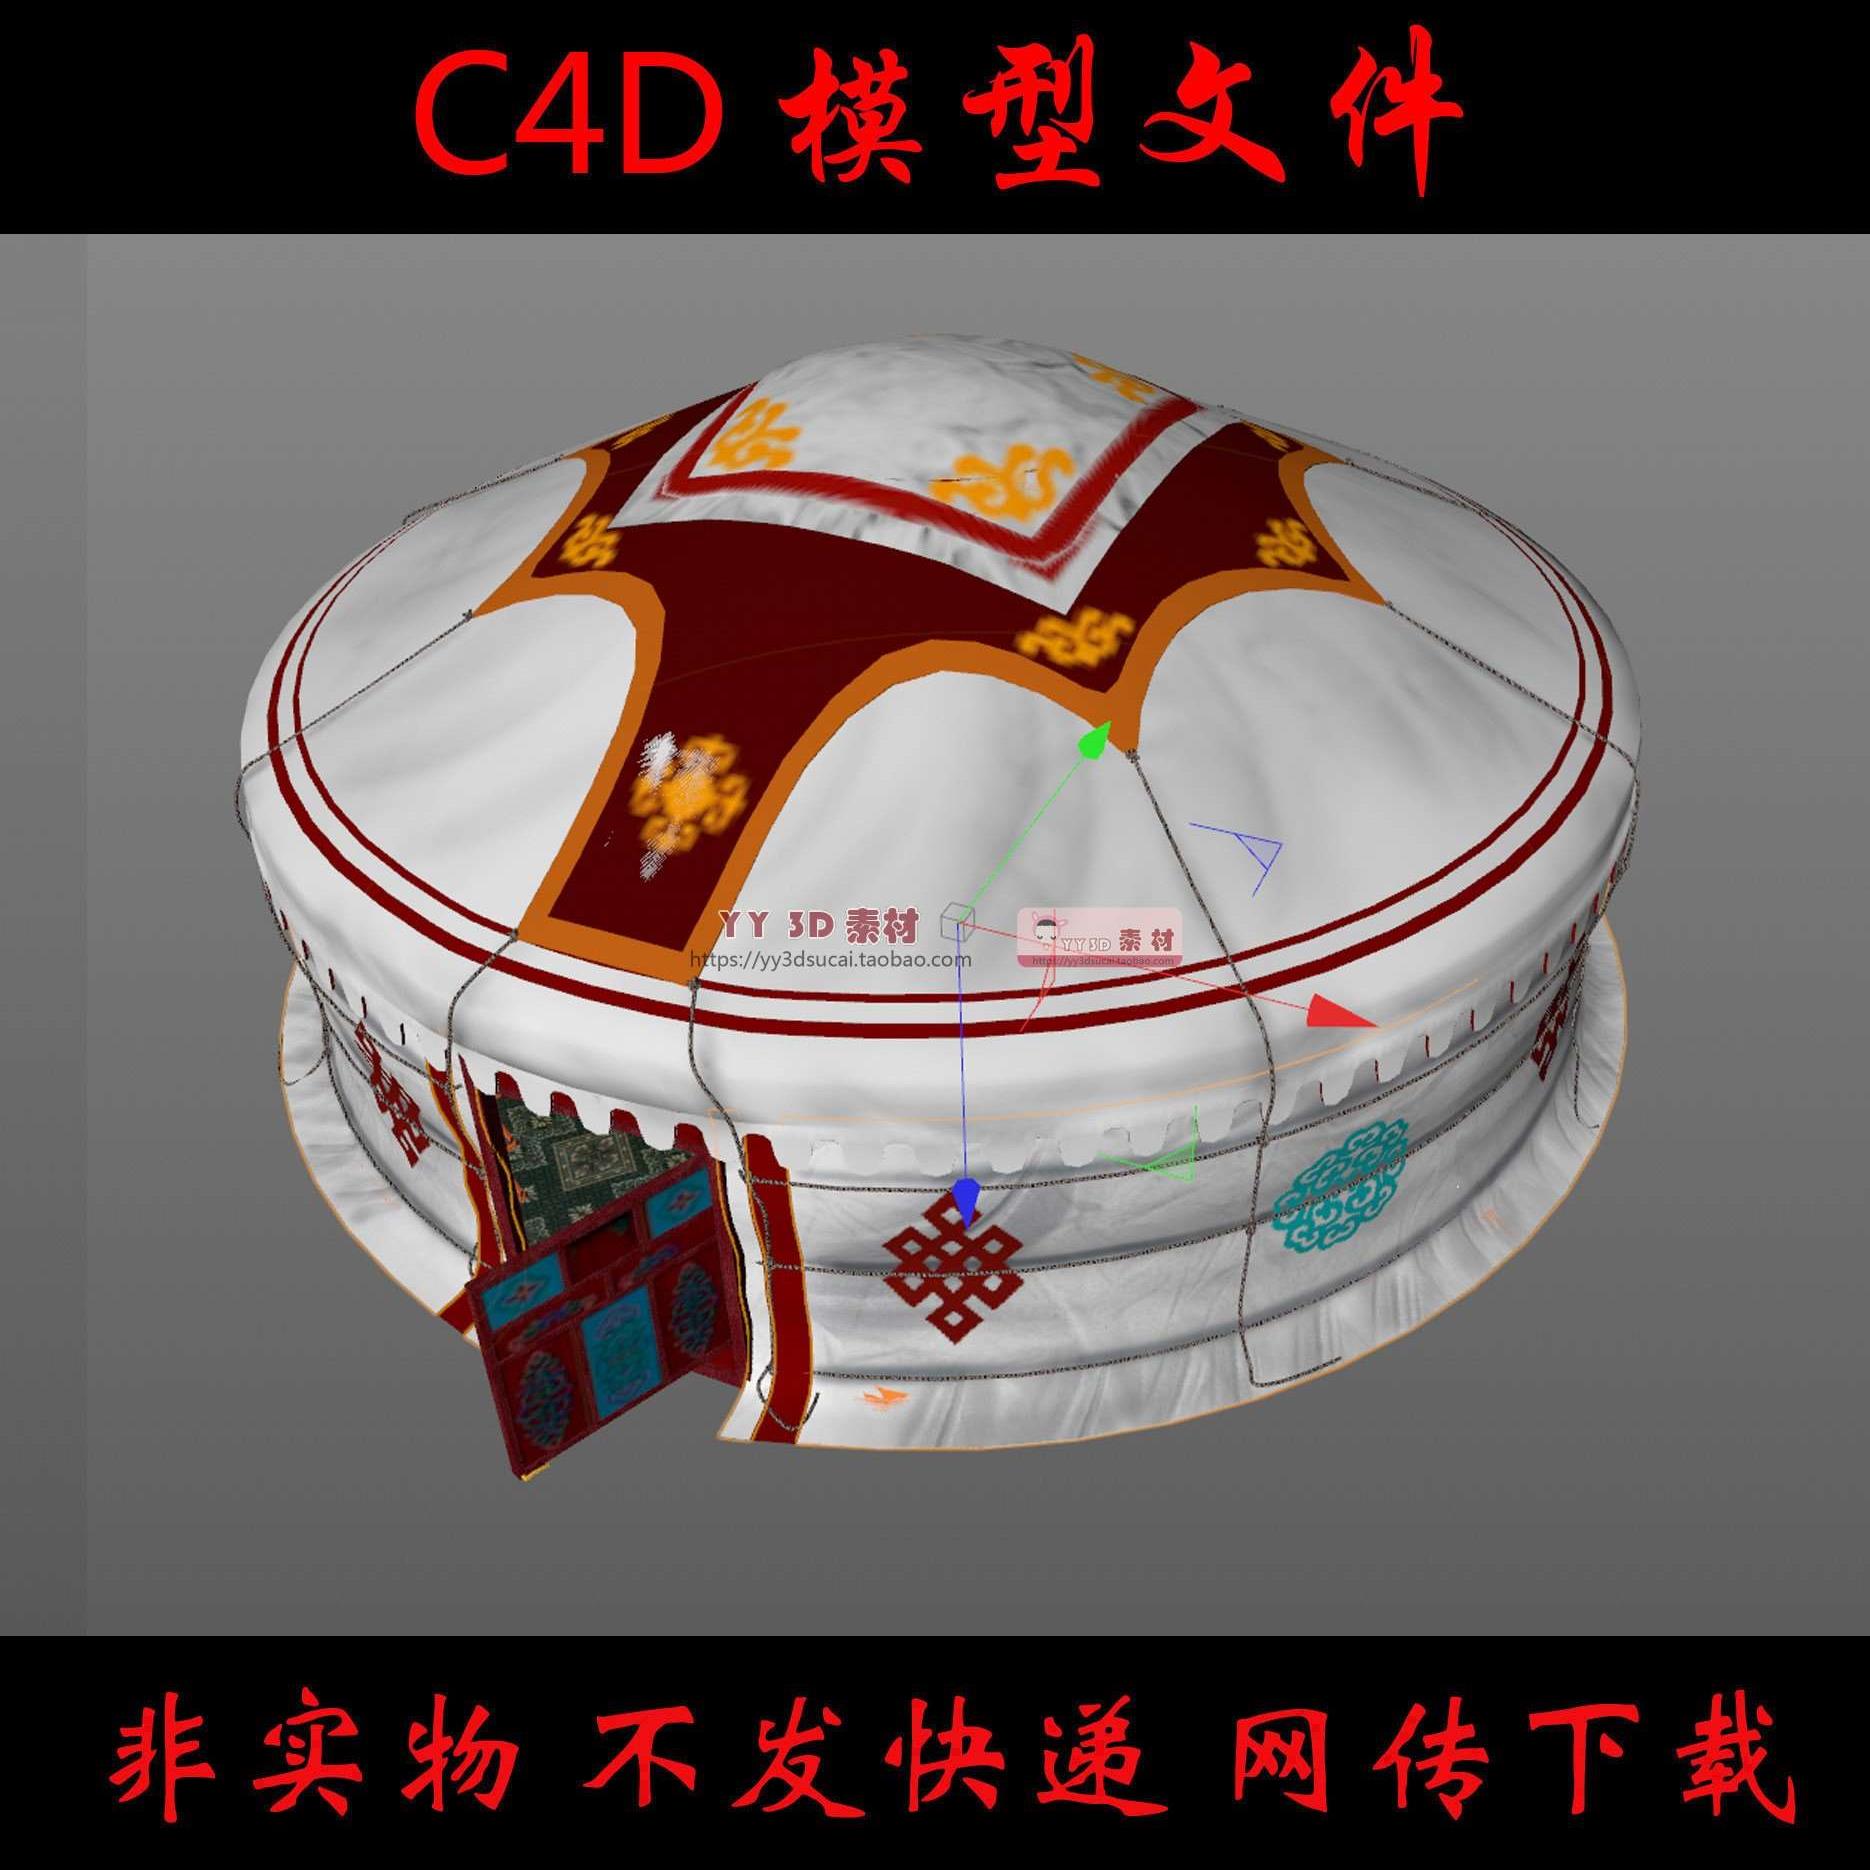 【c0022】精细的蒙古包c4d模型素材蒙古包有内部蒙古包里面c4d模